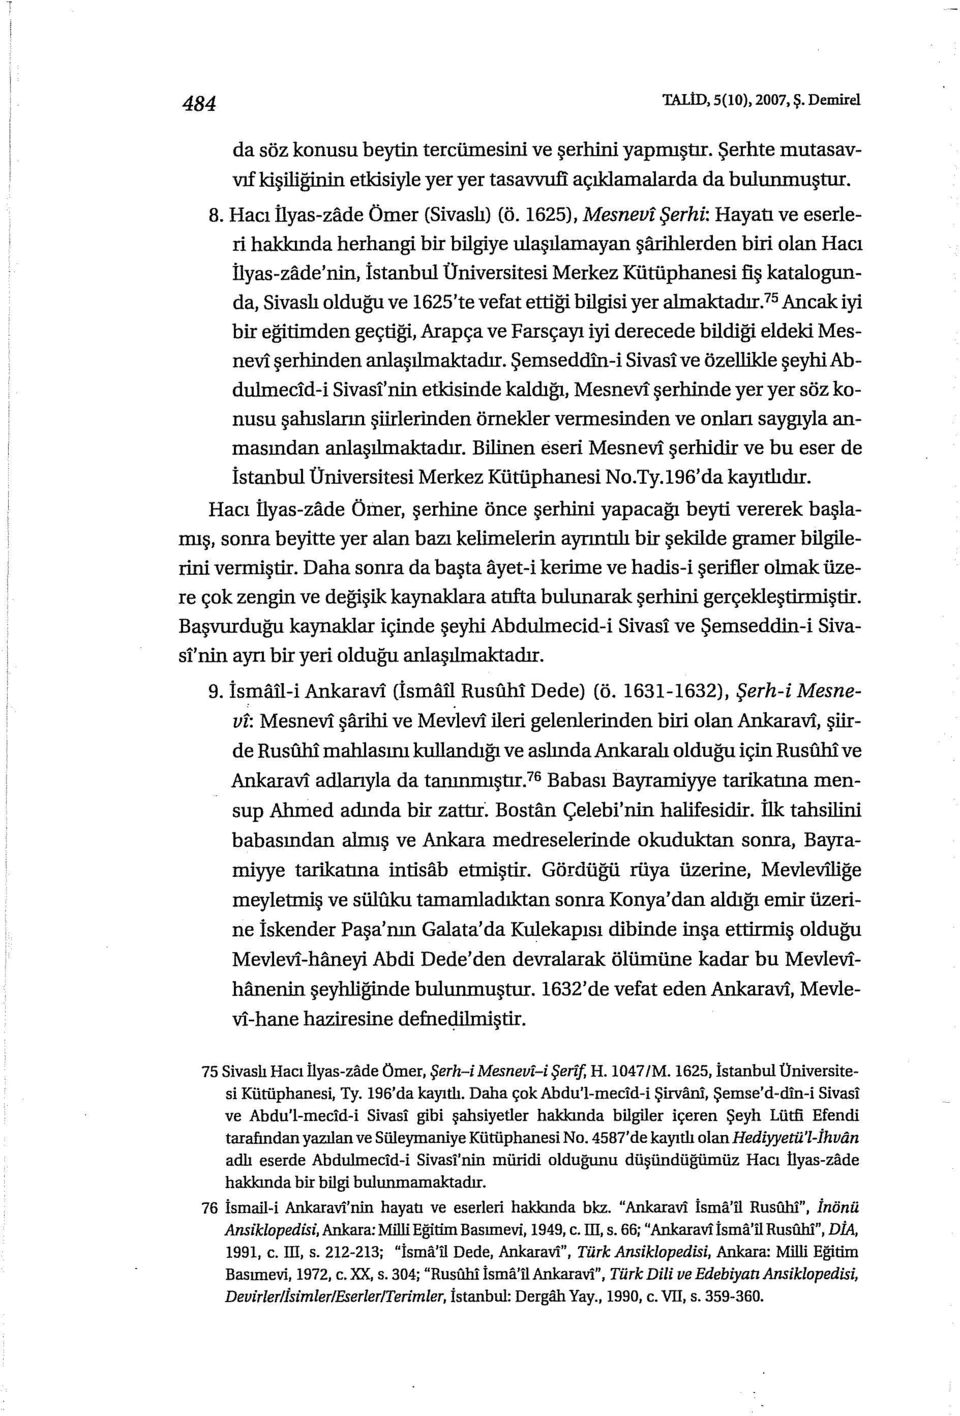 1625), Mesnevf Şerhi: Hayatı ve eserleri hakkında herhangi bir bilgiye tilaşılamayan şfuihlerden biri olan Hacı llyas-zade'nirı, istanbul Üniversitesi Merkez Kütüphanesi fiş katalogunda, Sivaslı